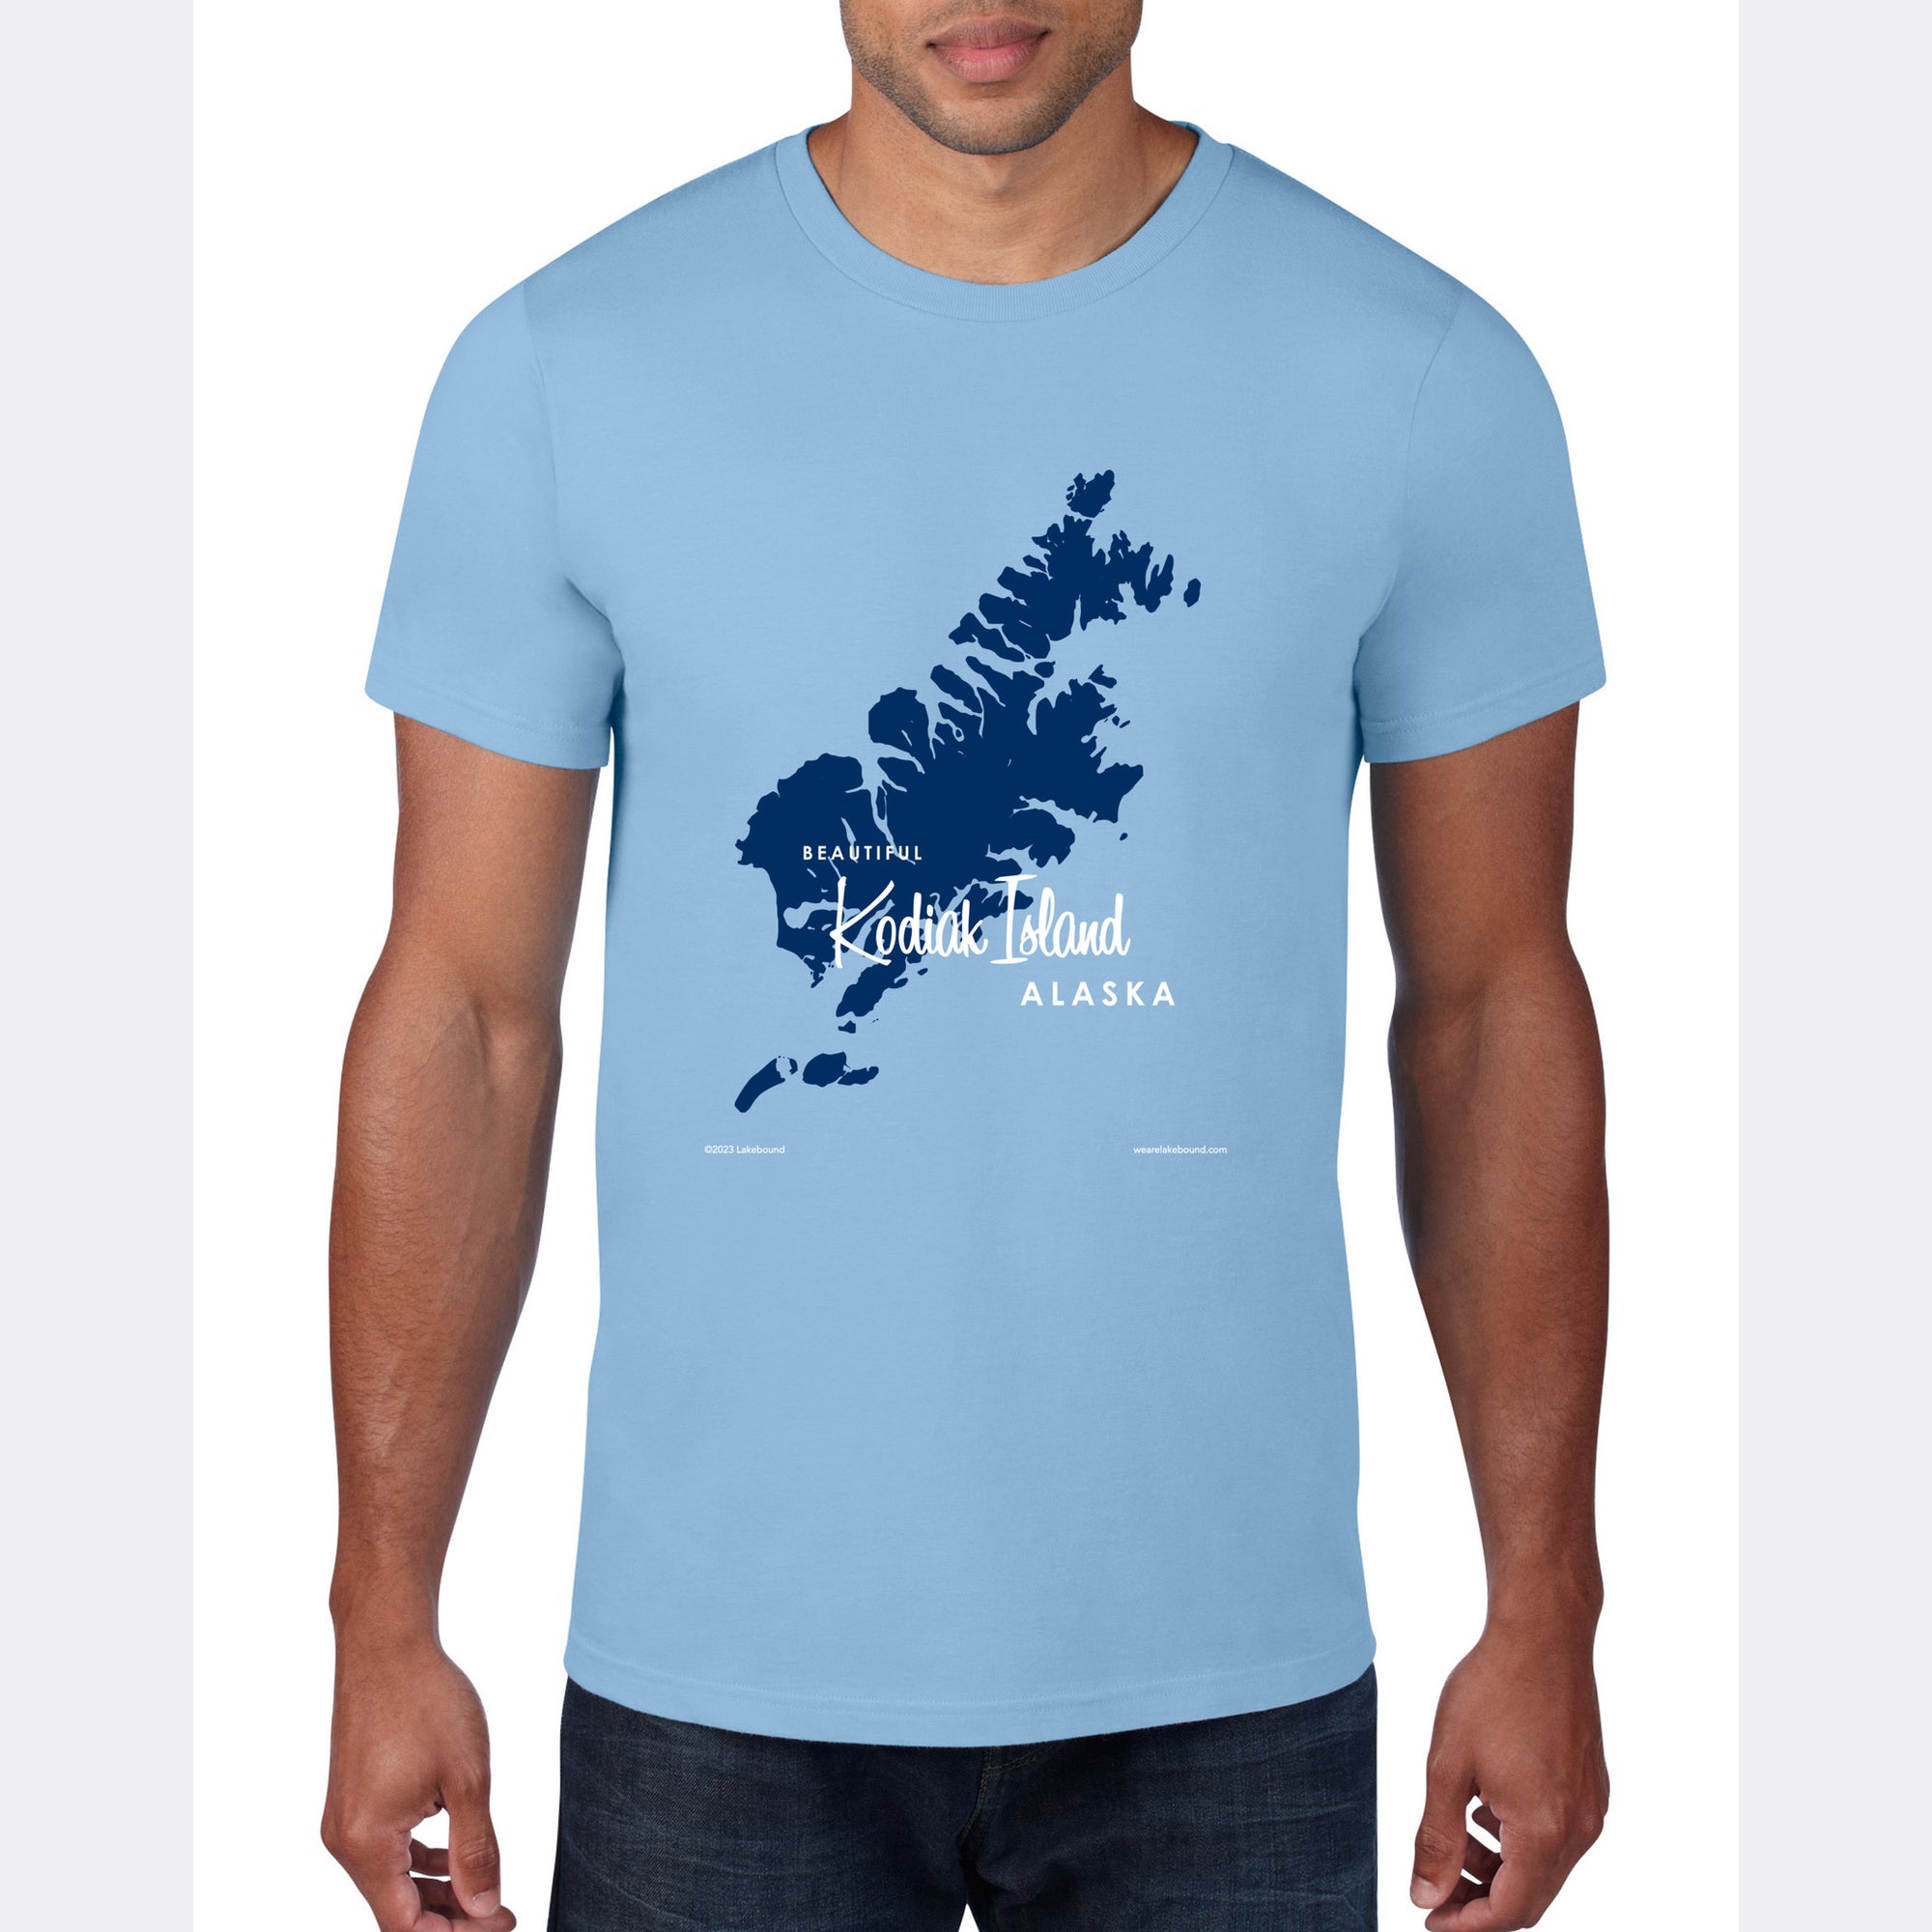 Kodiak Island Alaska, T-Shirt